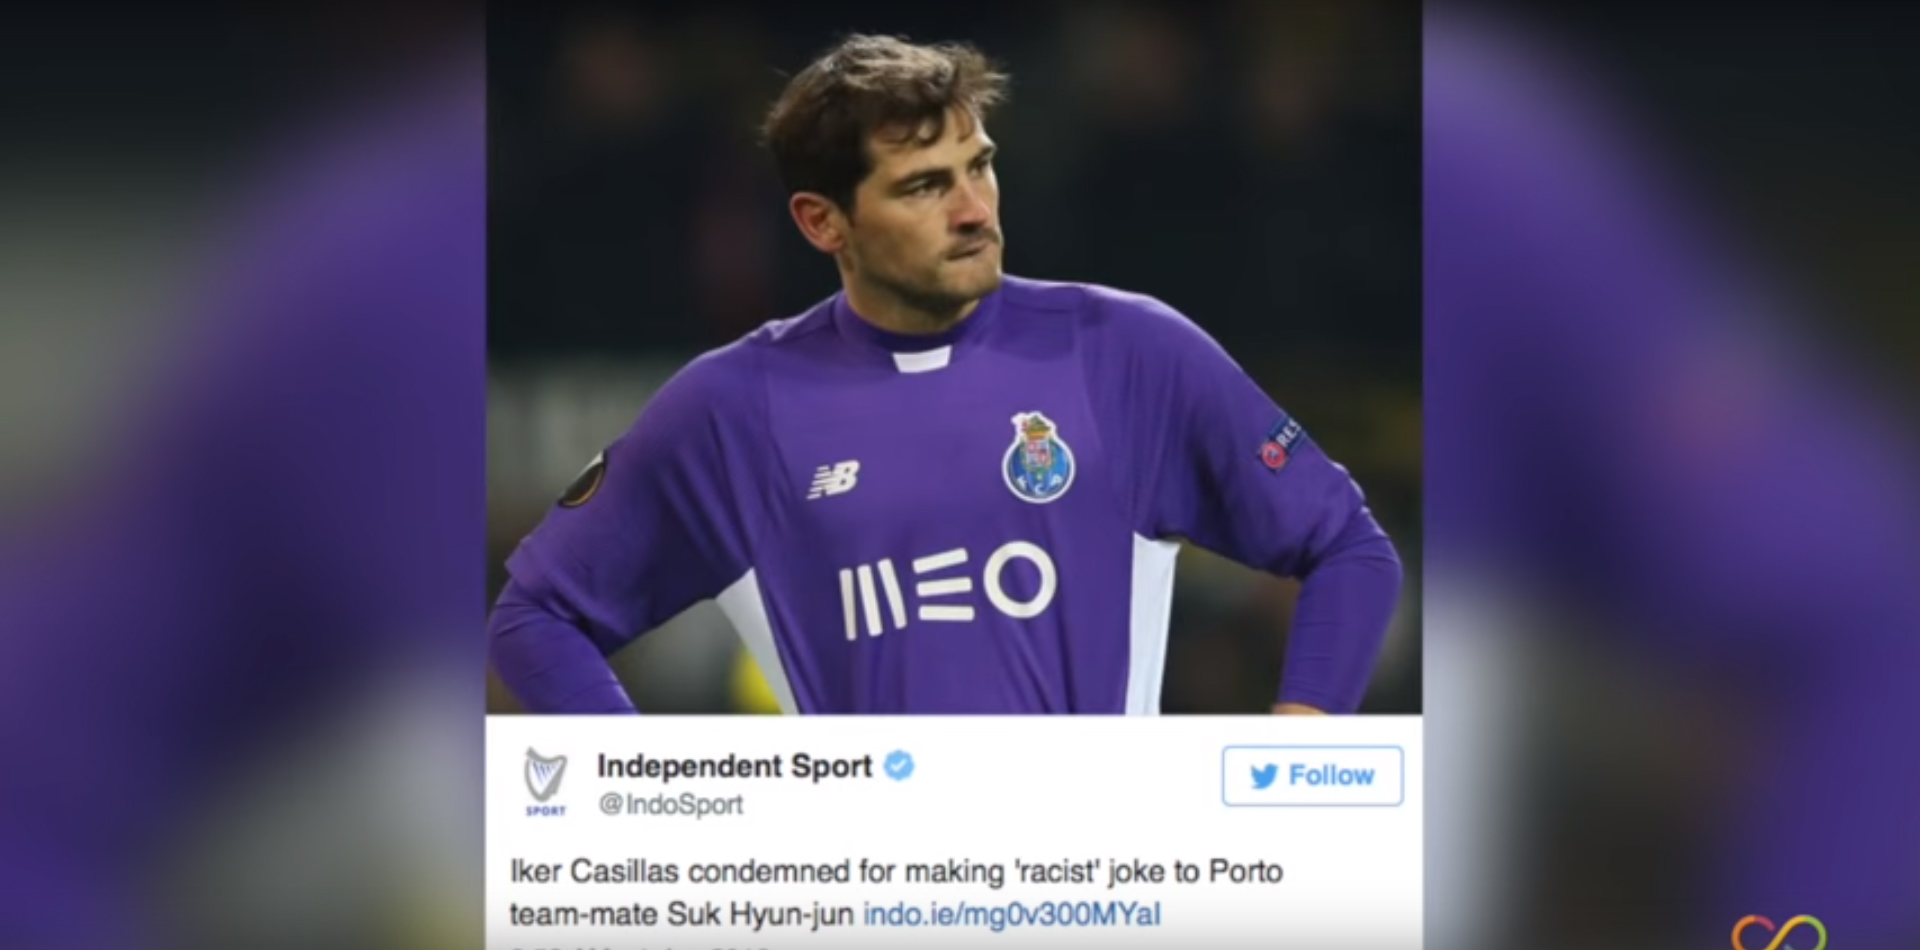 Esta broma de Casillas a su compañero coreano no ha hecho gracia en las redes